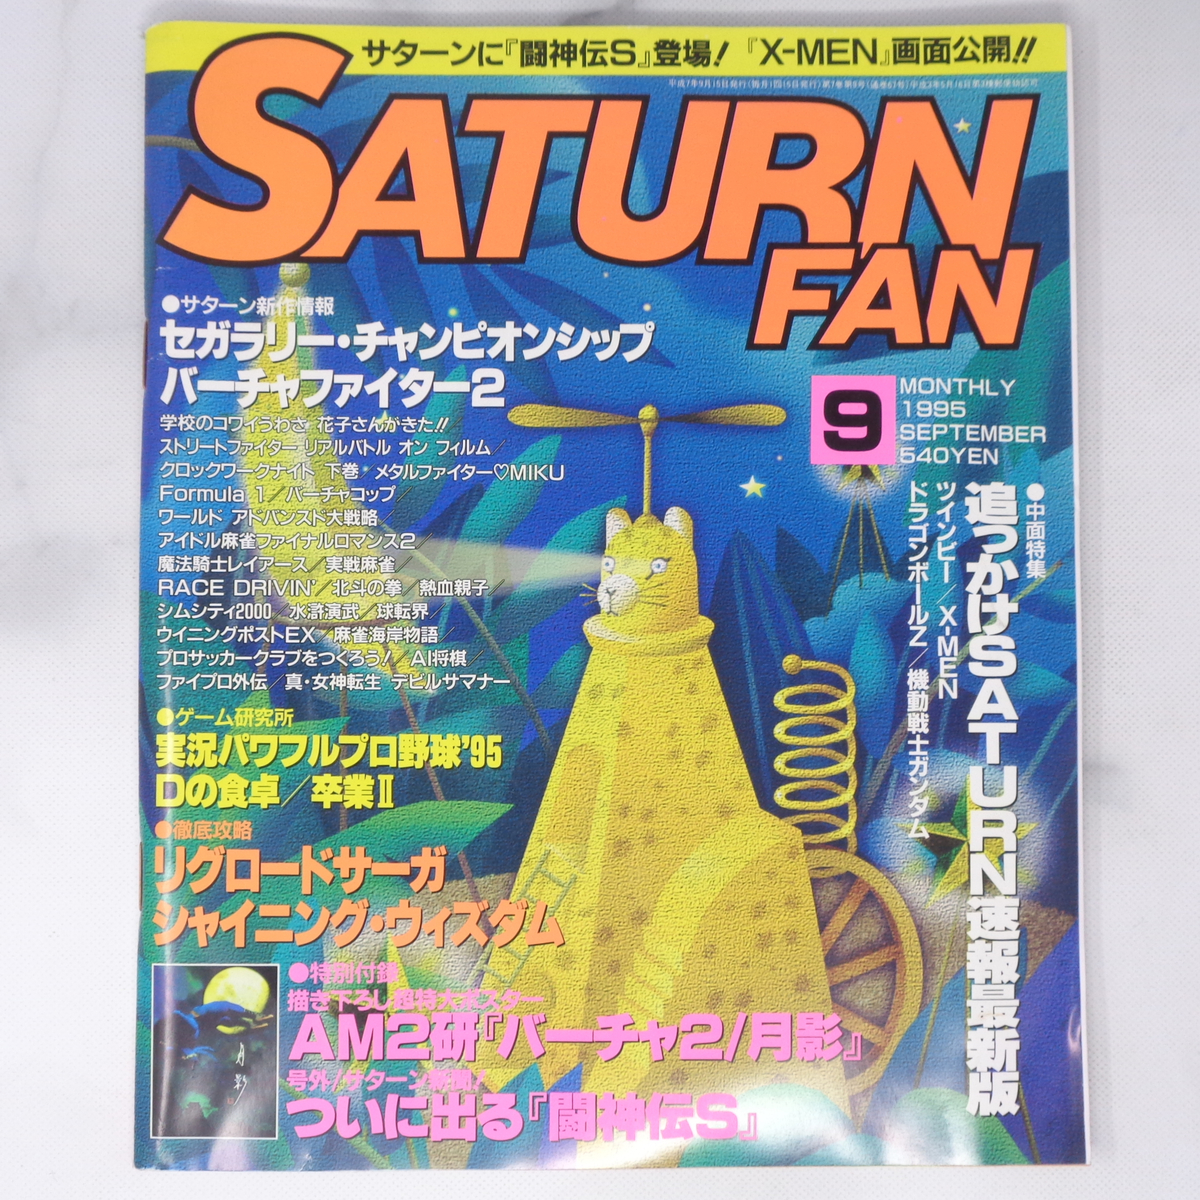 SATURN FAN サターンファン 1995年9月号【タバコ臭,曲がりあり】別冊付録無し /追っかけSATURN速報最新版/X-MEN/ゲーム雑誌[Free Shipping]_画像1